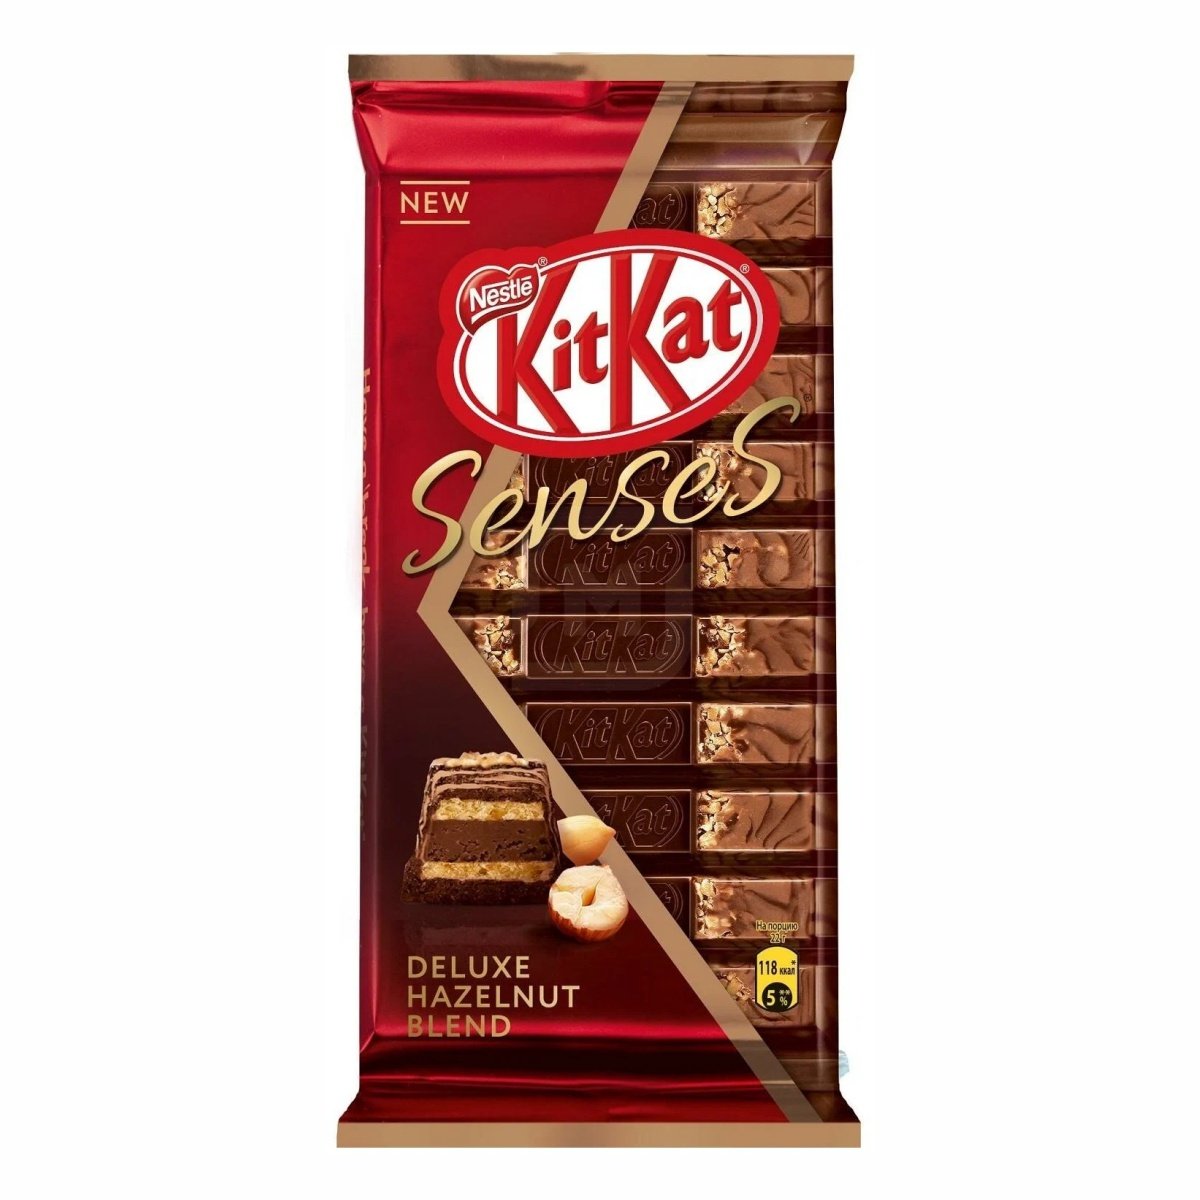 Шоколад Кит Кат Сенсес Делюкс со вкусом фундука 110г - купить с доставкой